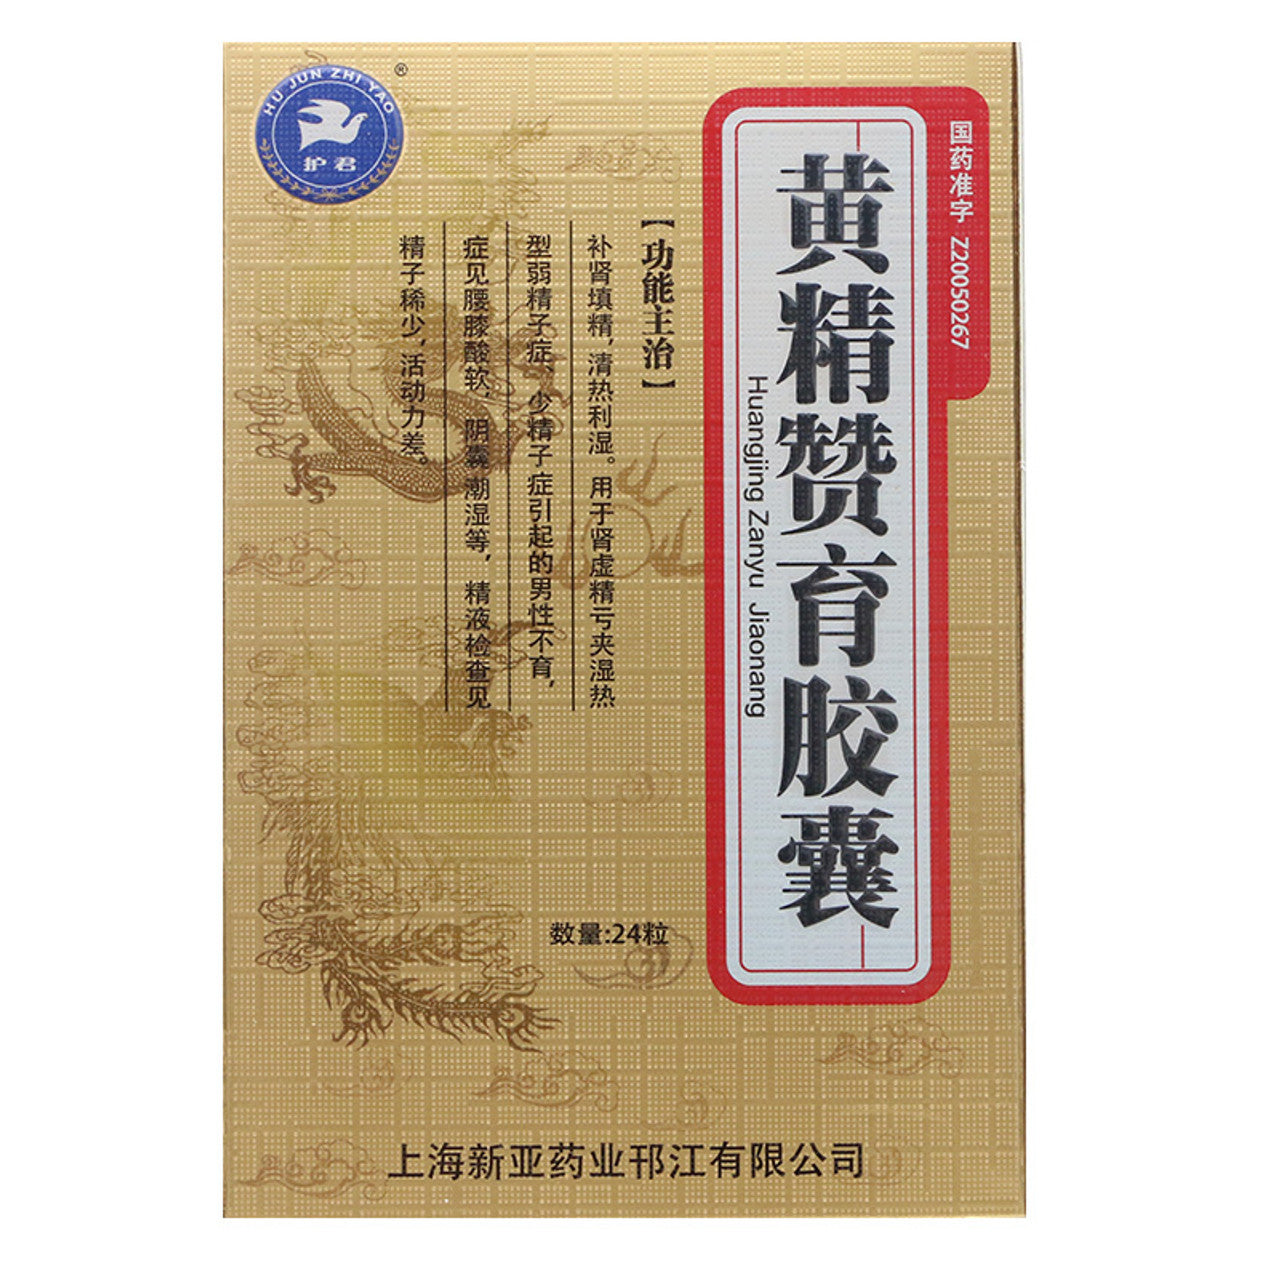 Herbal Supplememts. Huangjing Zanyu Jiaonang / Huangjing Zanyu Capsule / Huang Jing Zan Yu Capsule / Huang Jing Zan Yu Jiao Nang